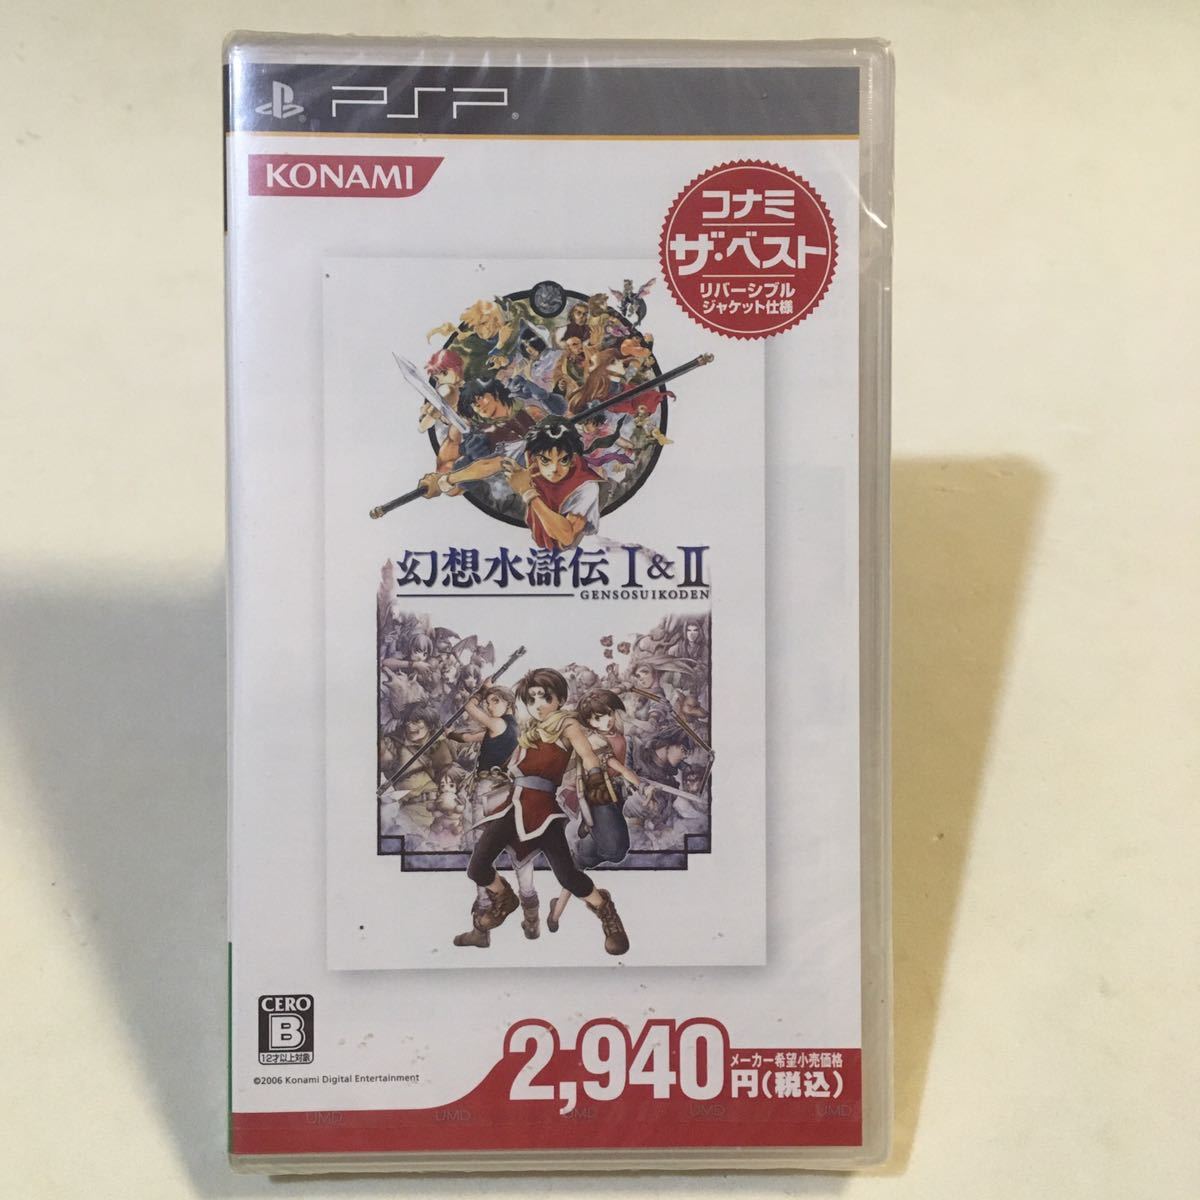 PSP 幻想水滸伝 Ⅰ&Ⅱ コナミ ザ・ベスト 未開封_画像1